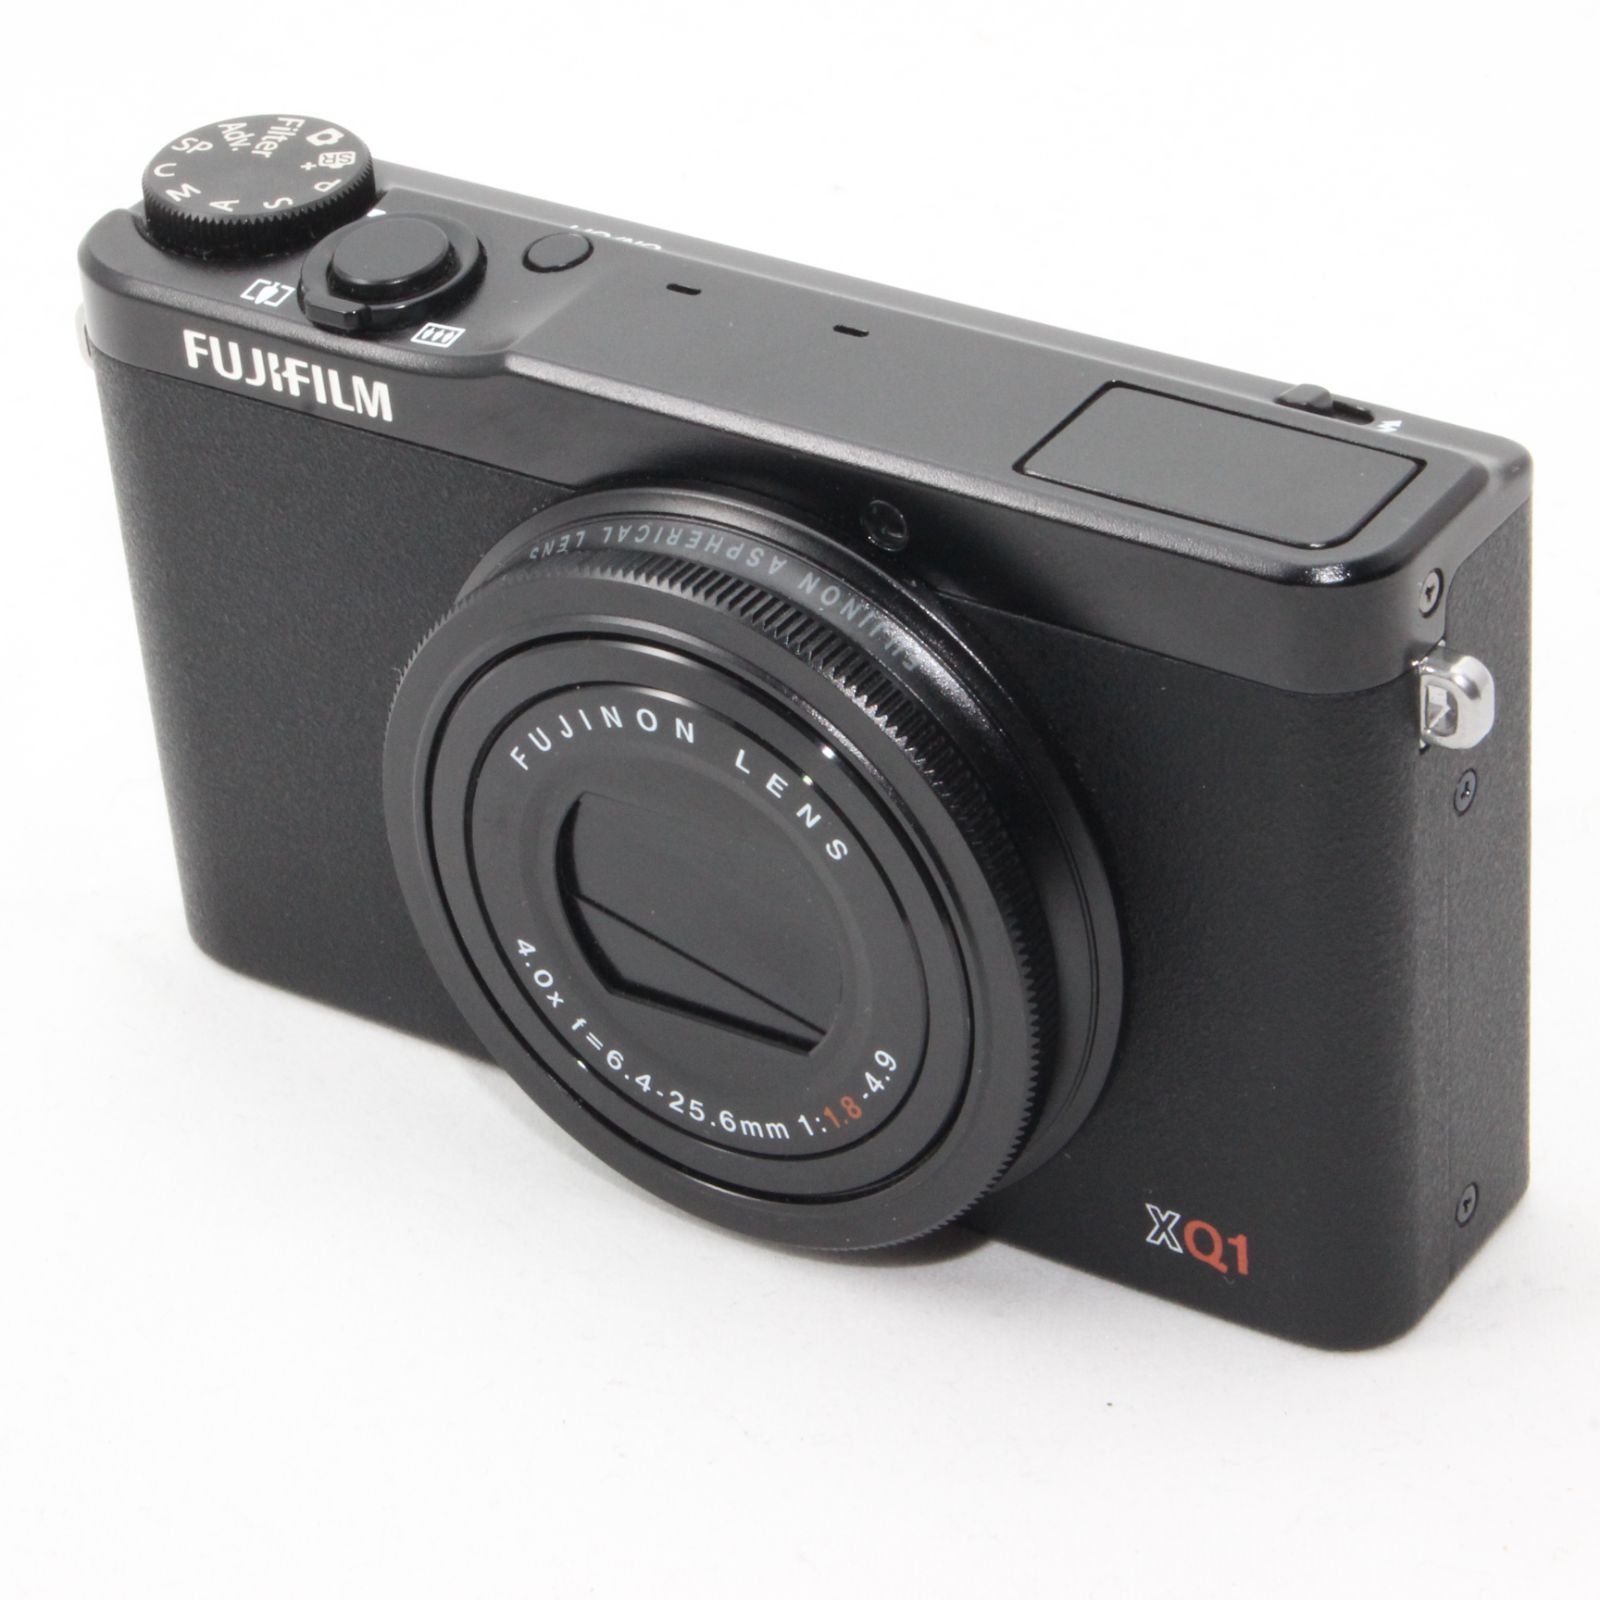 FUJIFILM デジタルカメラ XQ1 ブラック F FX-XQ1 B - M&T Camera【中古